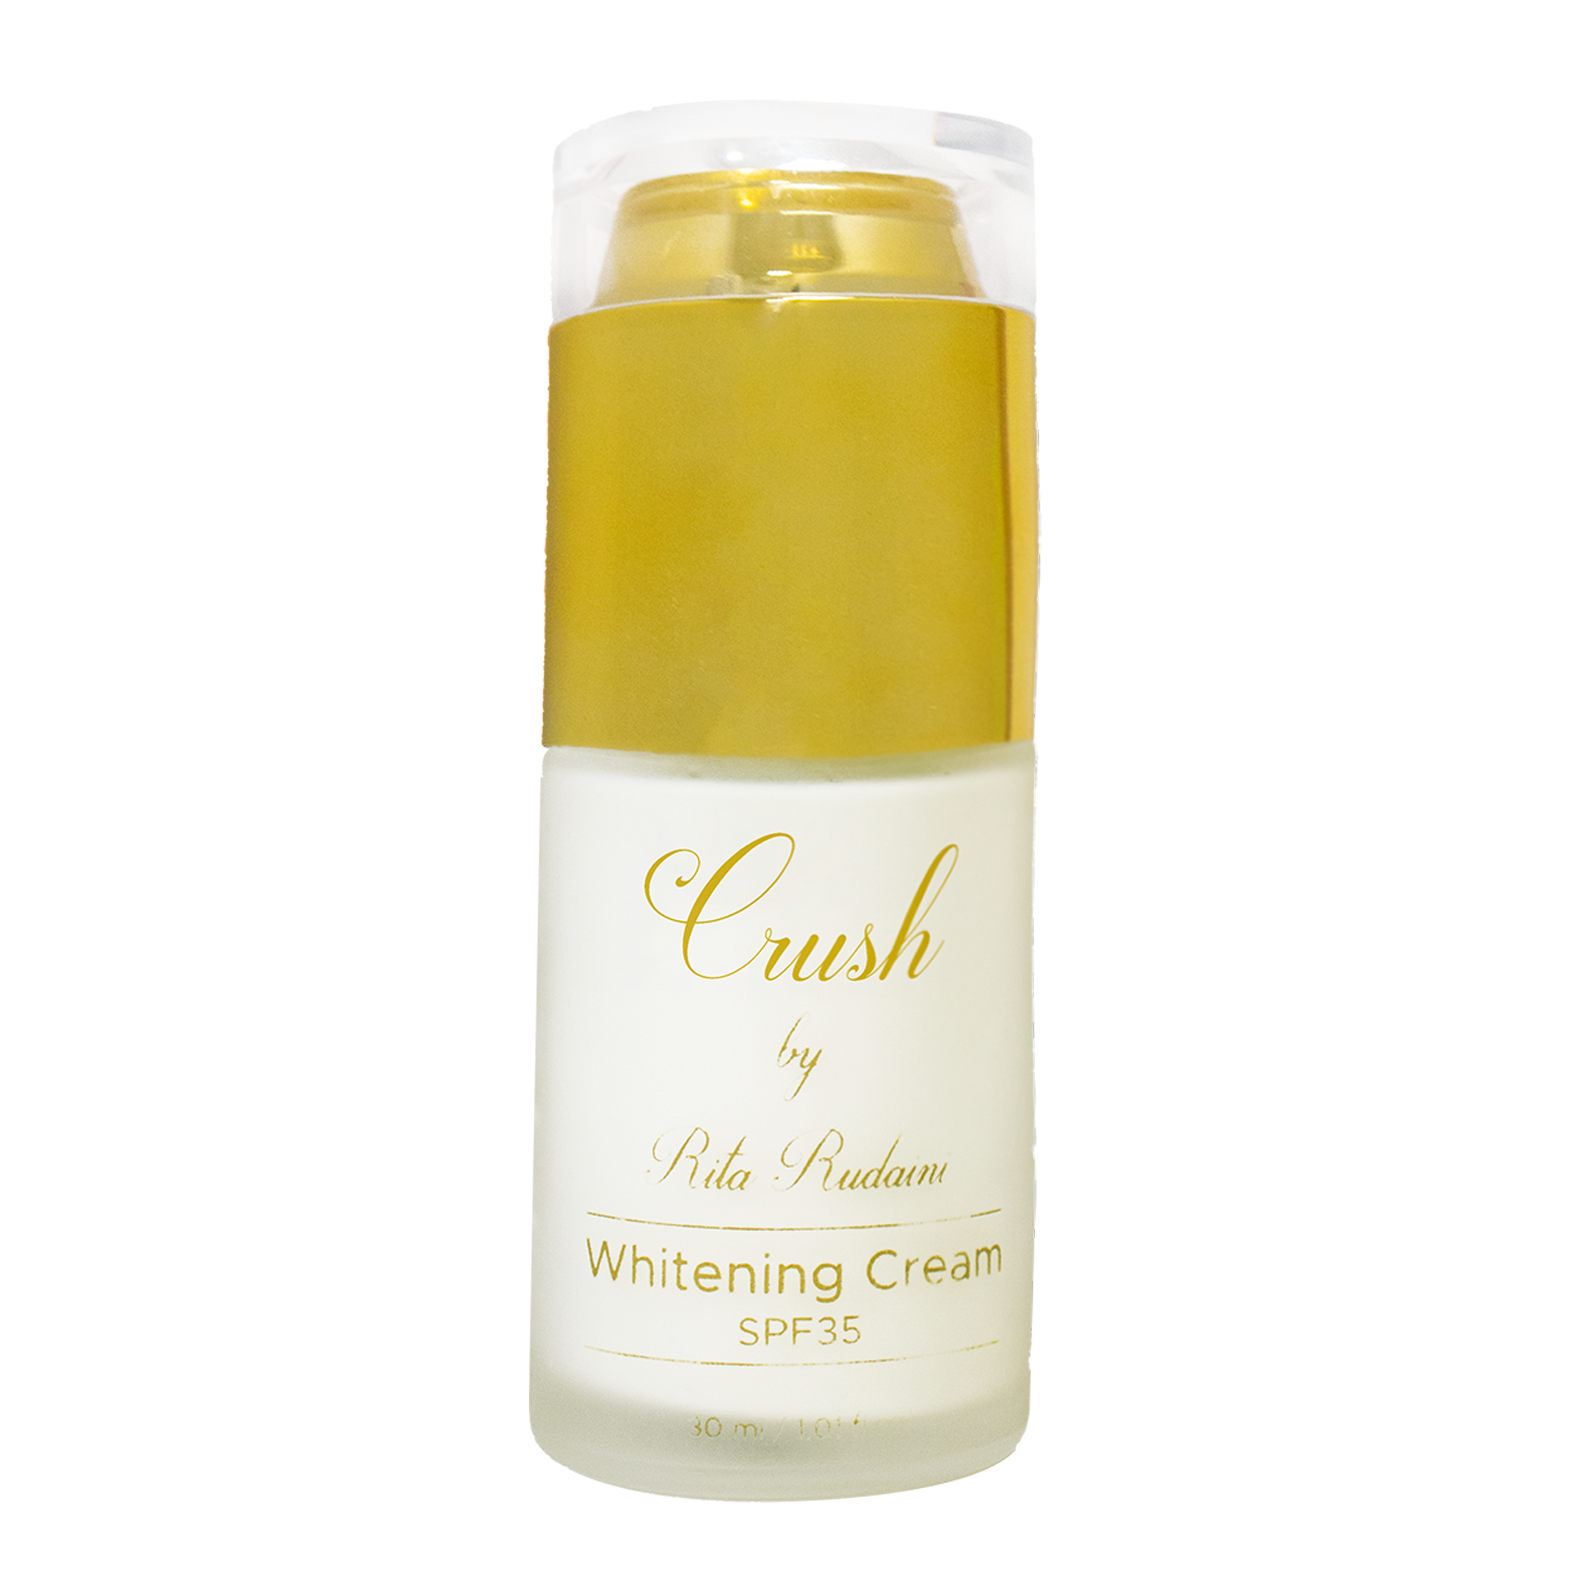 crush bottle whitening cream by rita rudaini